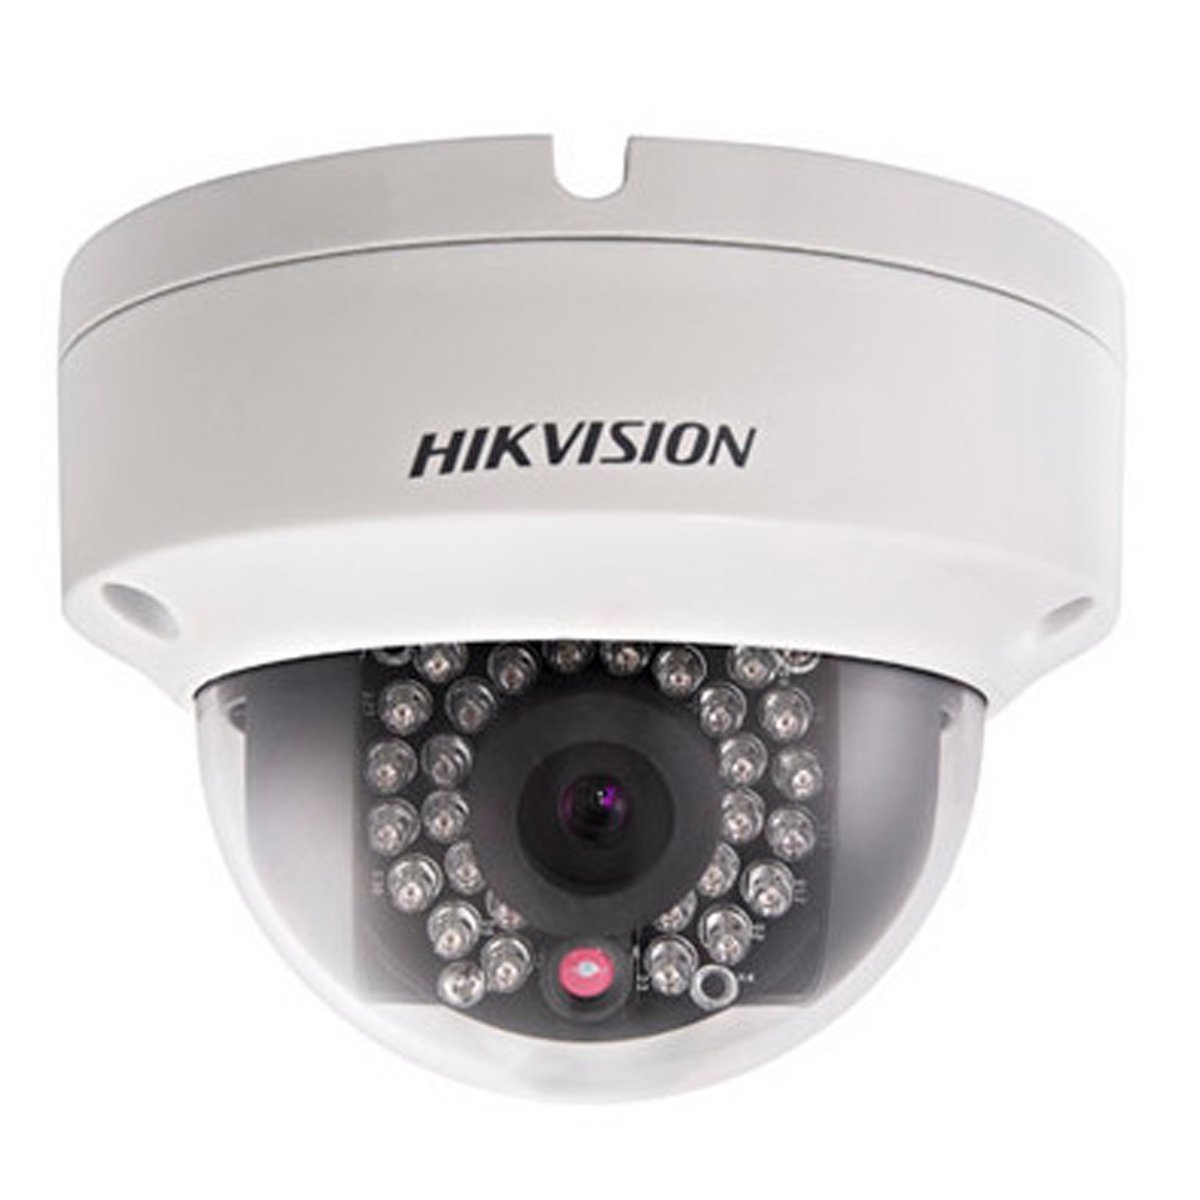 hikvision ip camera